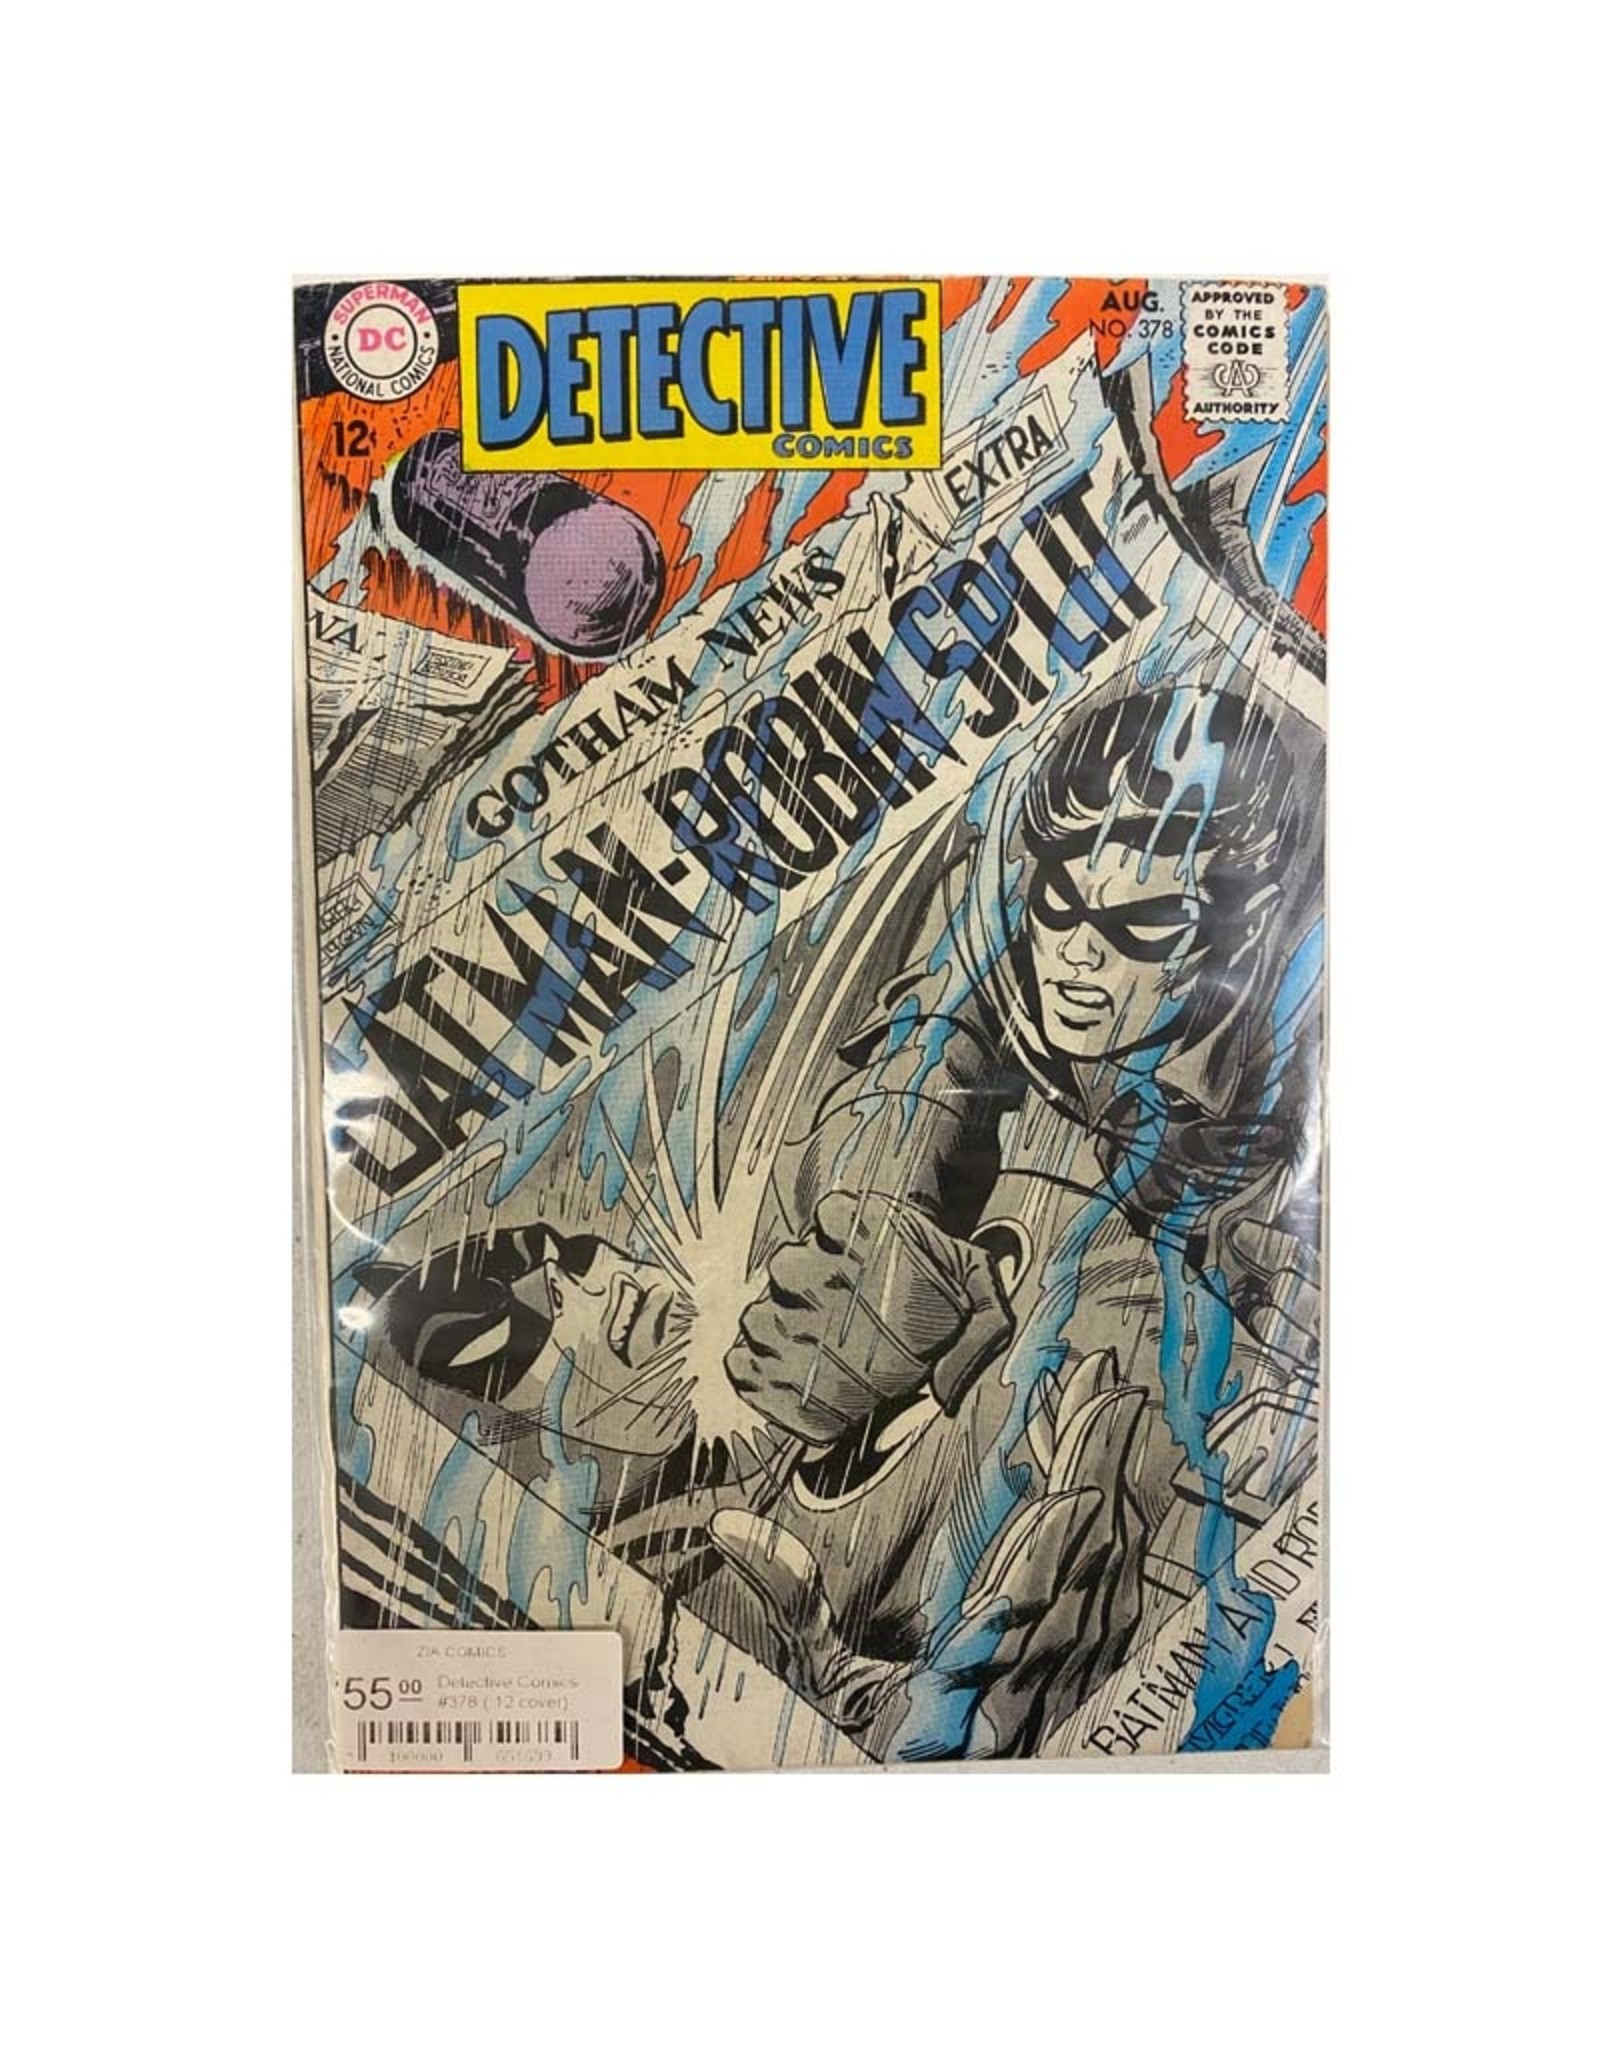 DC Comics Detective Comics #378 (.12 cover)